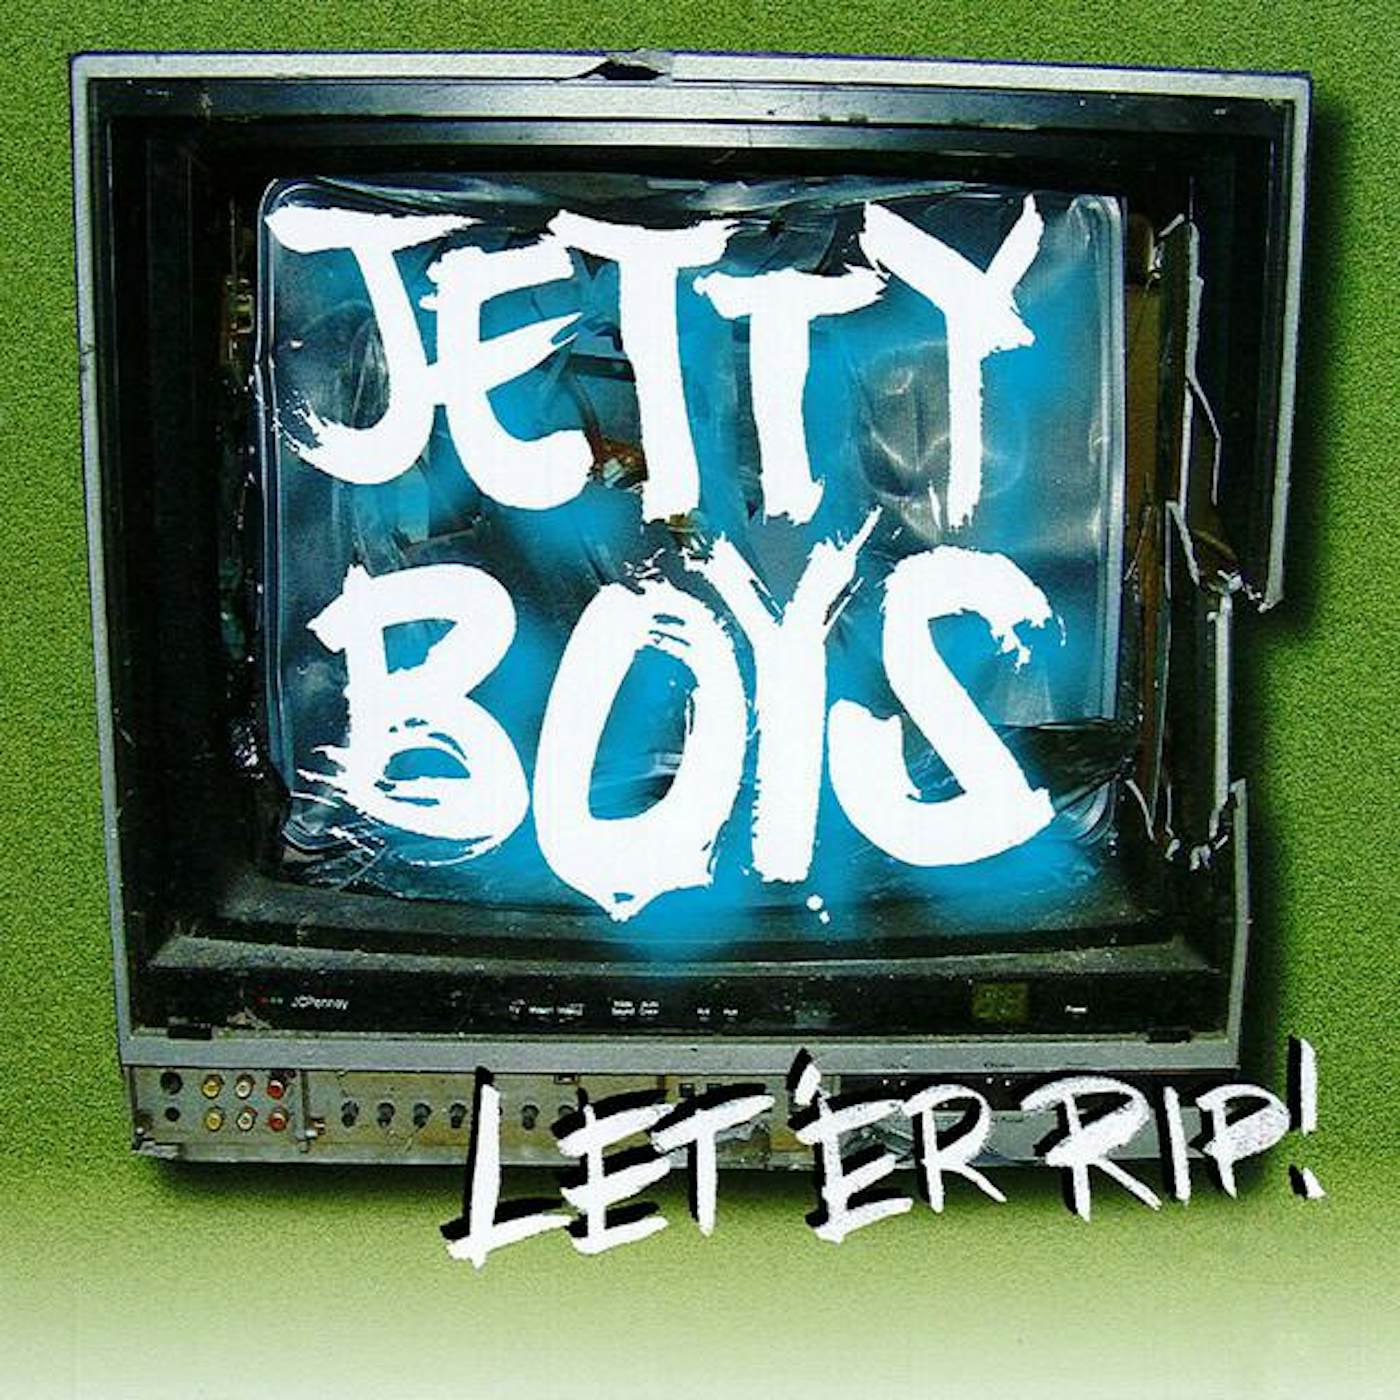 Jetty Boys